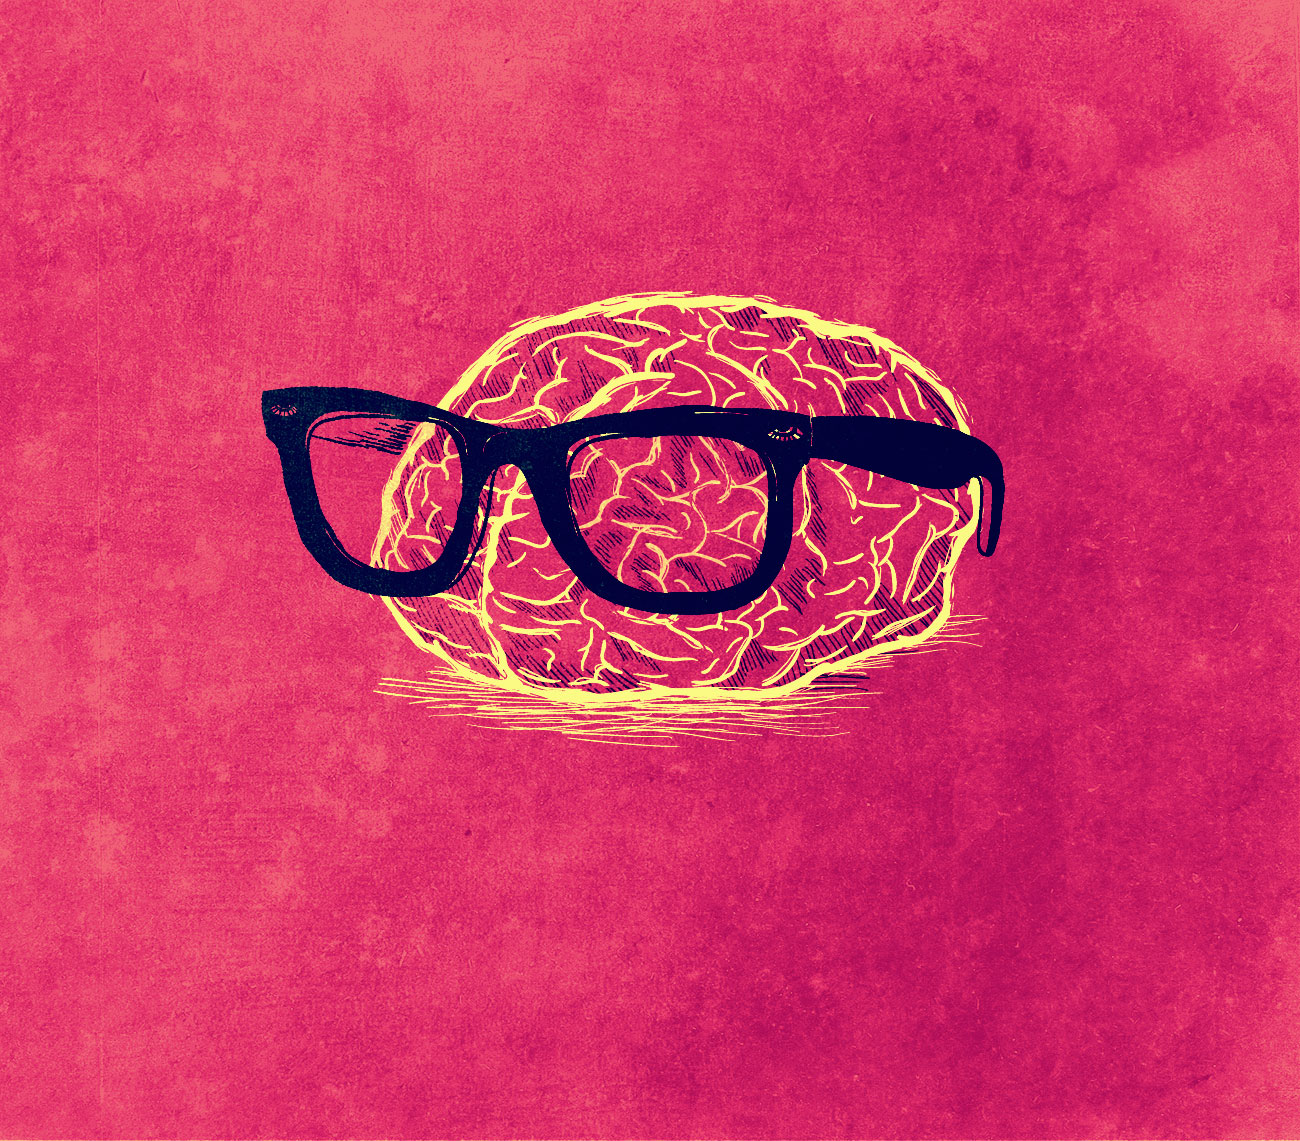 εικόνα εγκεφάλου με γυαλιά πάνω του